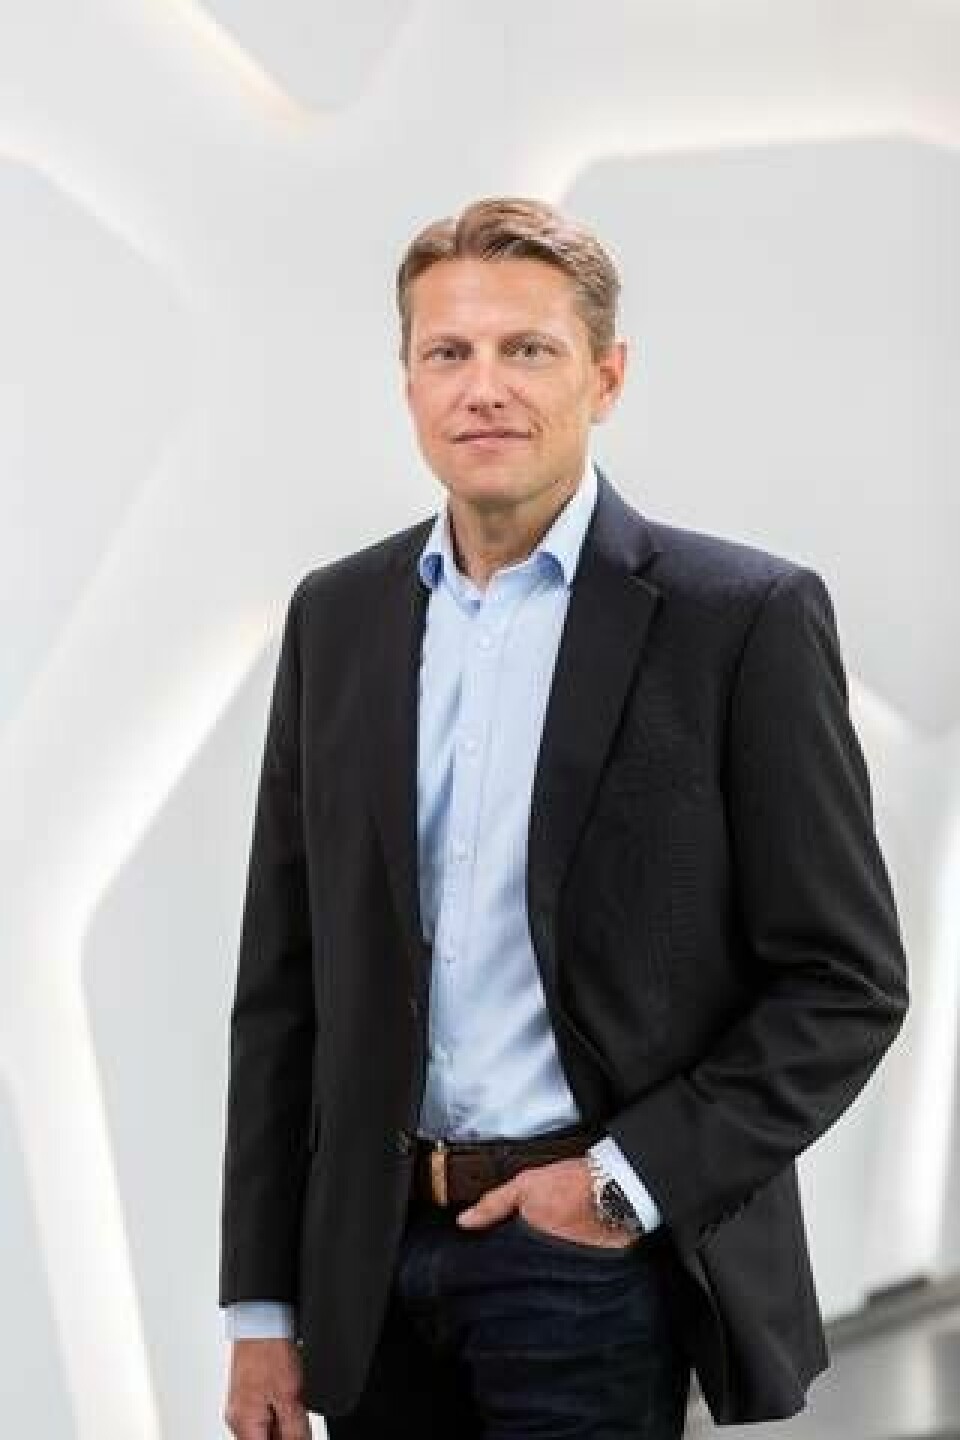 David Almqvist, affärsutvecklare och produktchef för lignin på svensk-finska skogsbolaget Stora Enso. Foto: Stora Enso